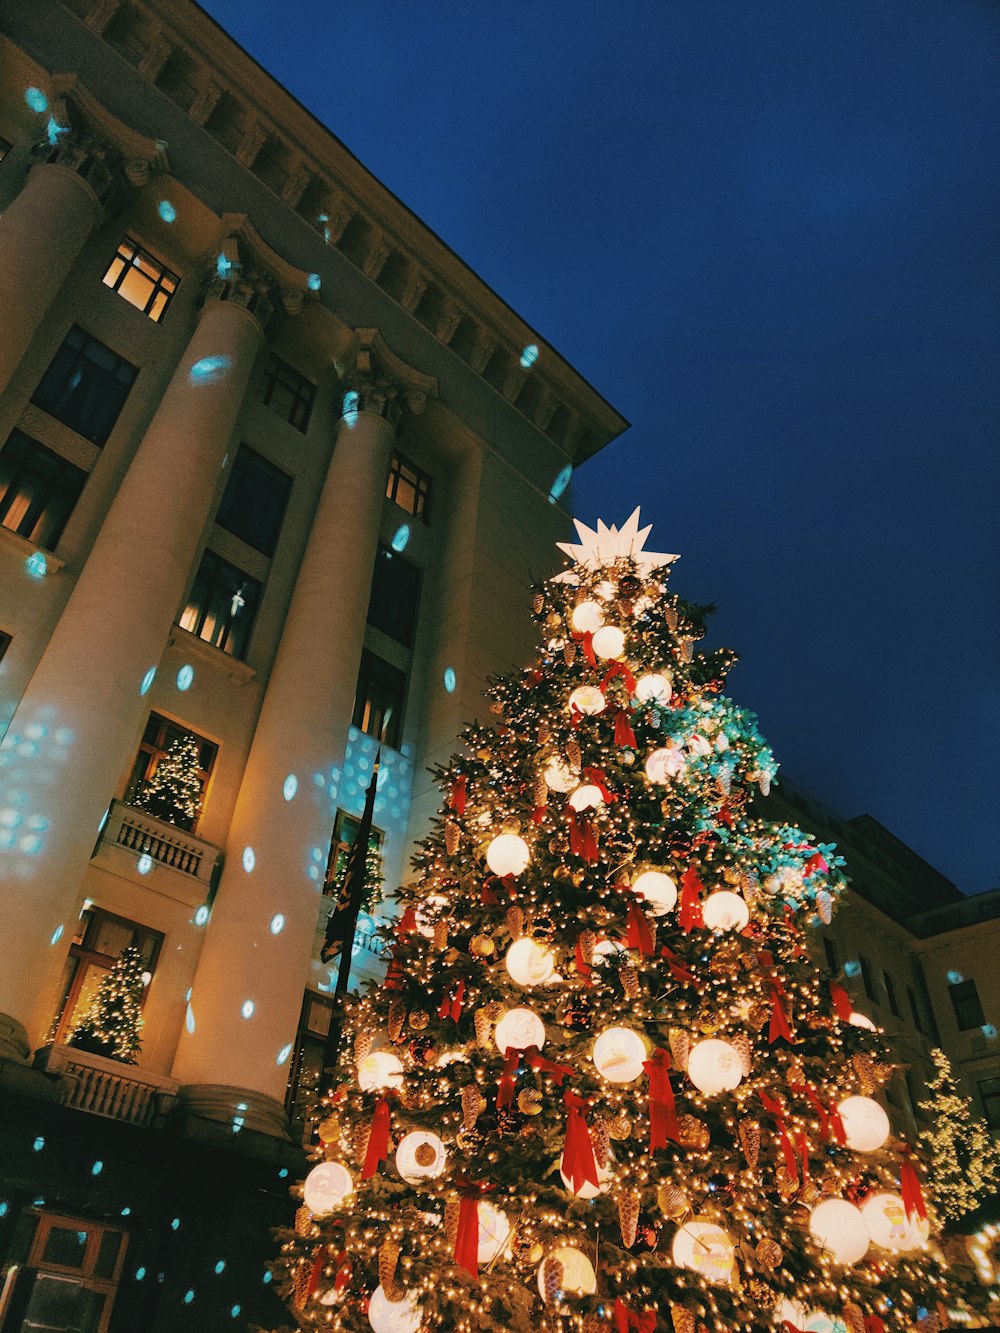 밤 시간 동안 갈색 콘크리트 건물 근처에 문자열 조명이 있는 크리스마스 트리